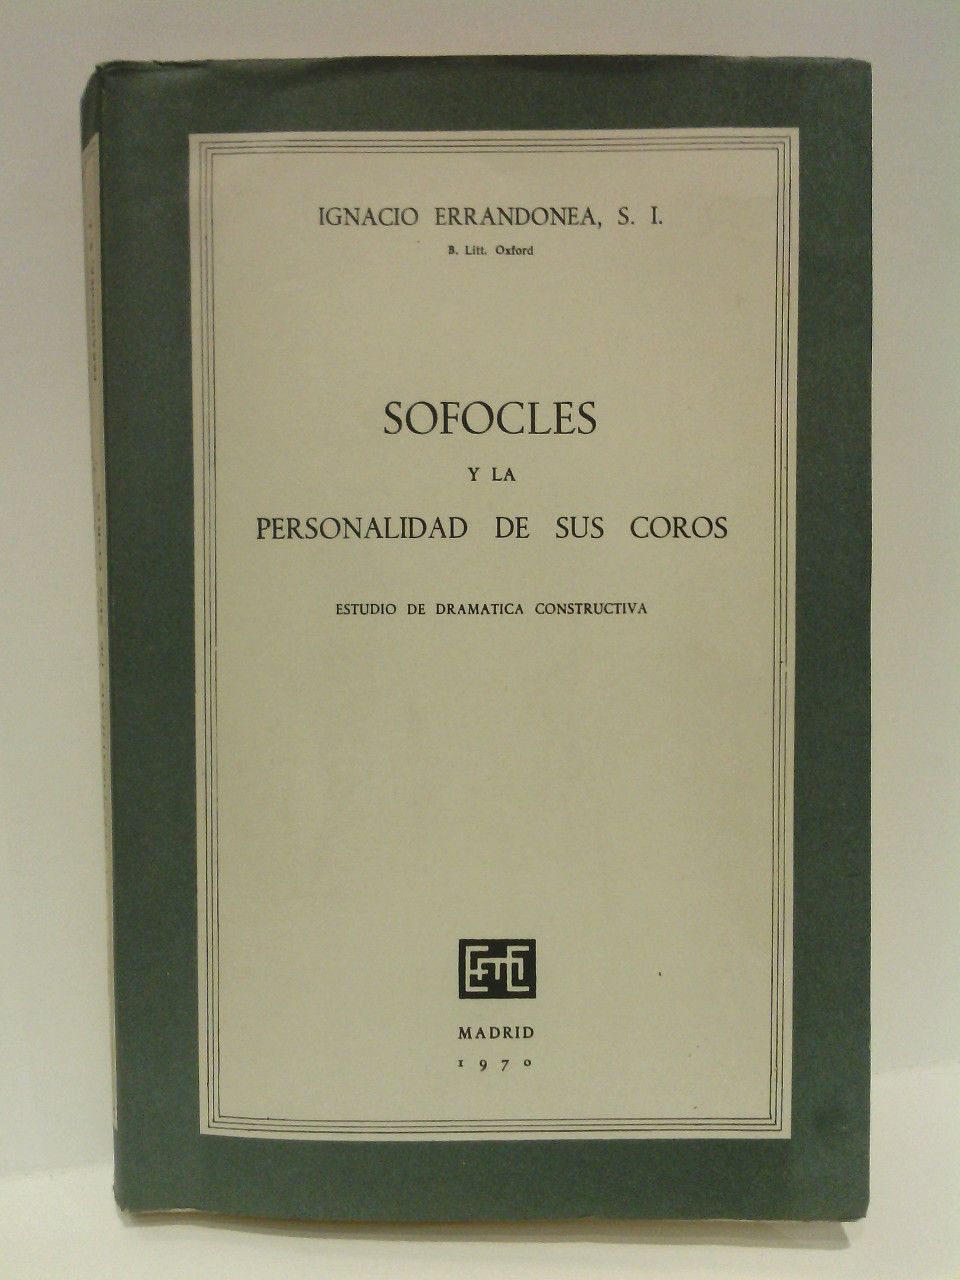 ERRANDONEA, Ignacio; S. I. - Sofocles y la personalidad de sus coros: Estudio de dramtica constructiva